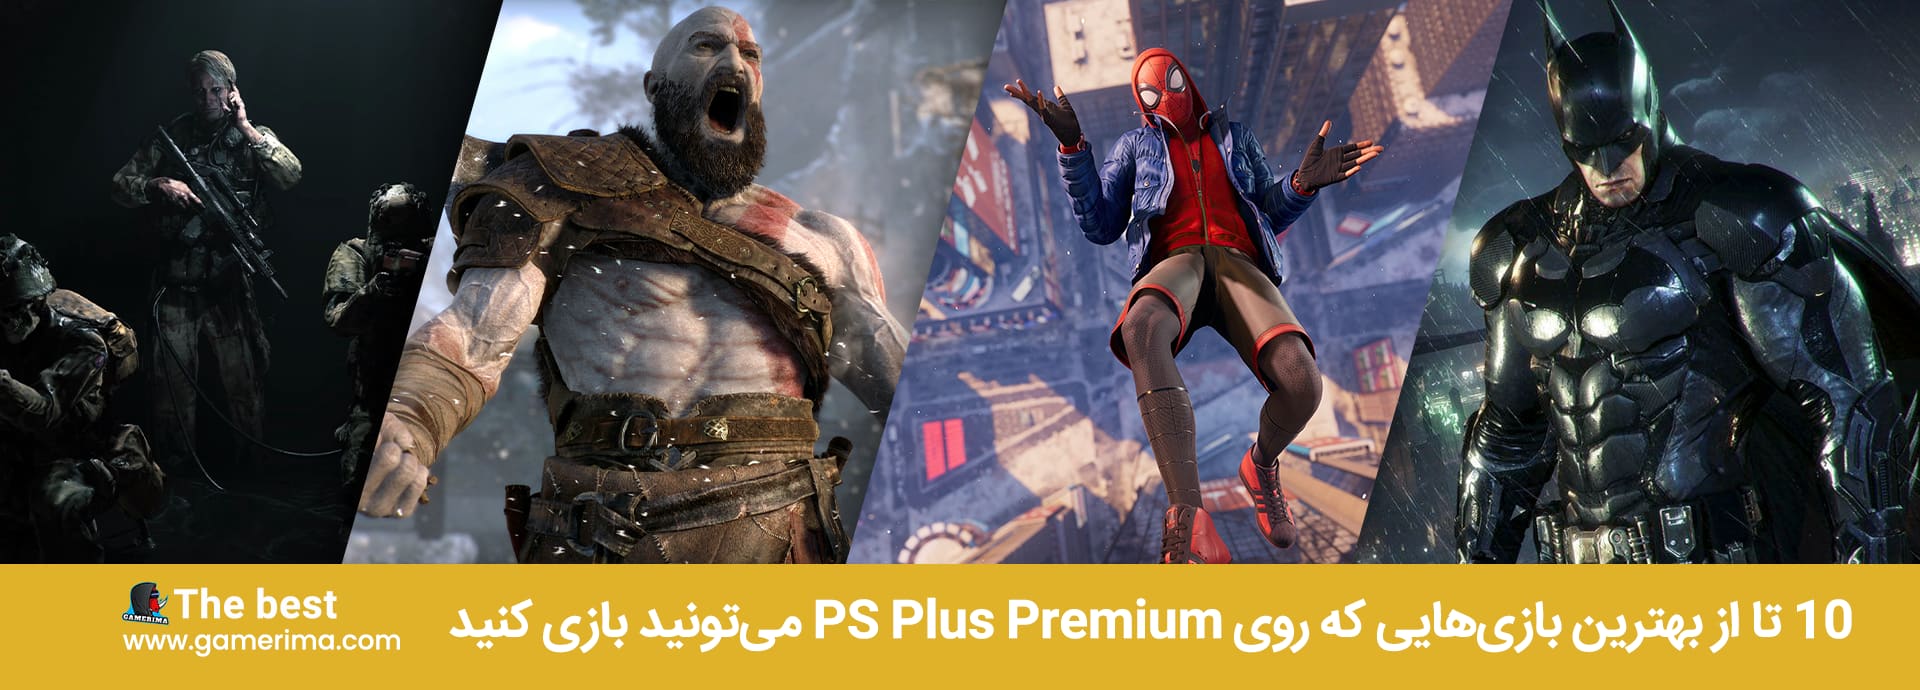 ۱۰ تا از بهترین بازی هایی که روی PS Plus Premium میتونید بازی کنید